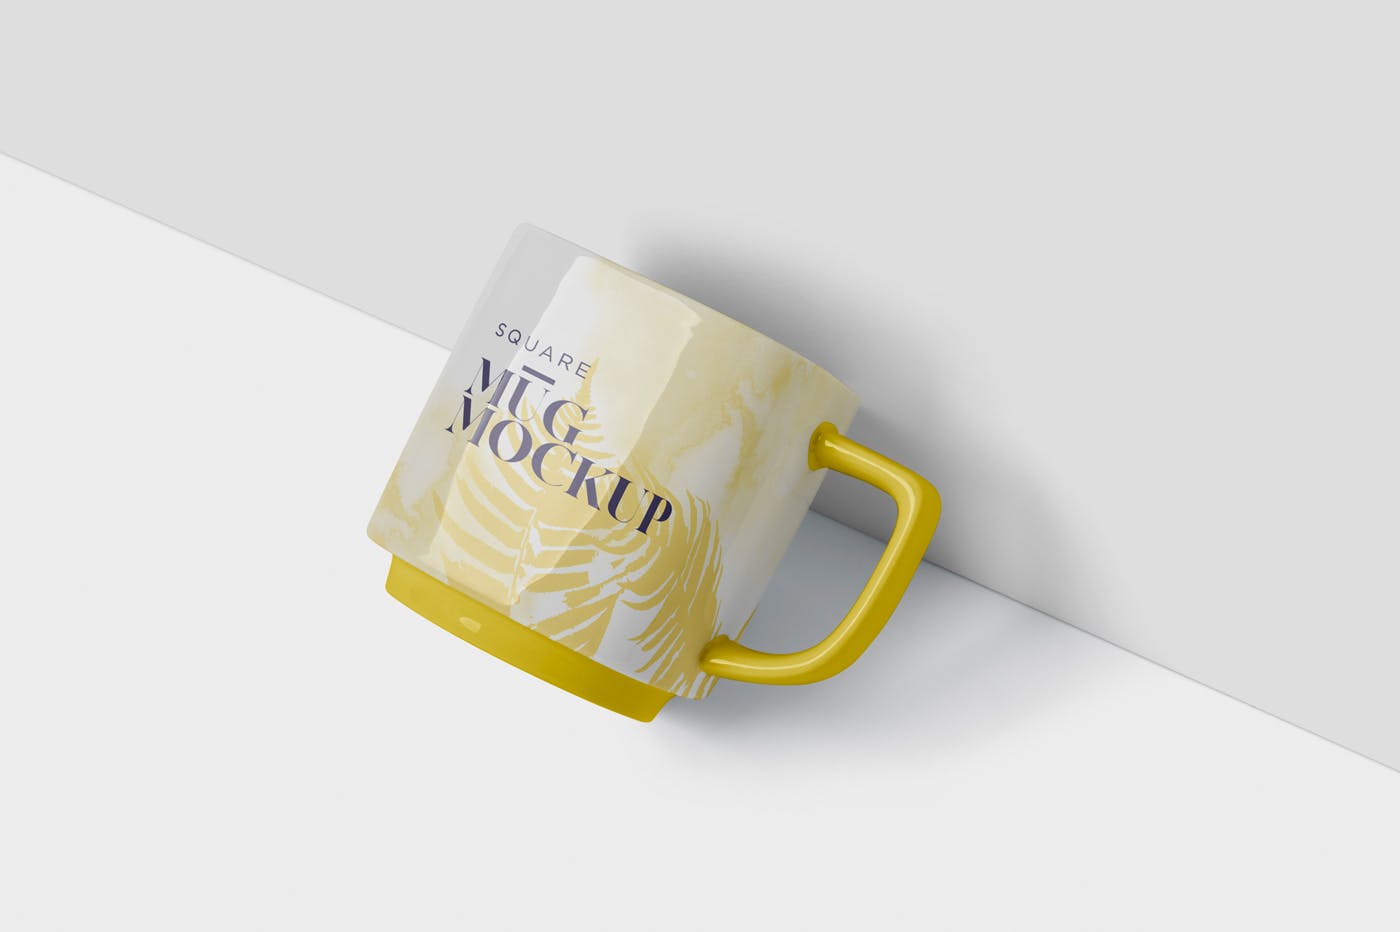 方形马克杯图案设计蚂蚁素材精选模板 Mug Mockup – Square Shaped插图(2)